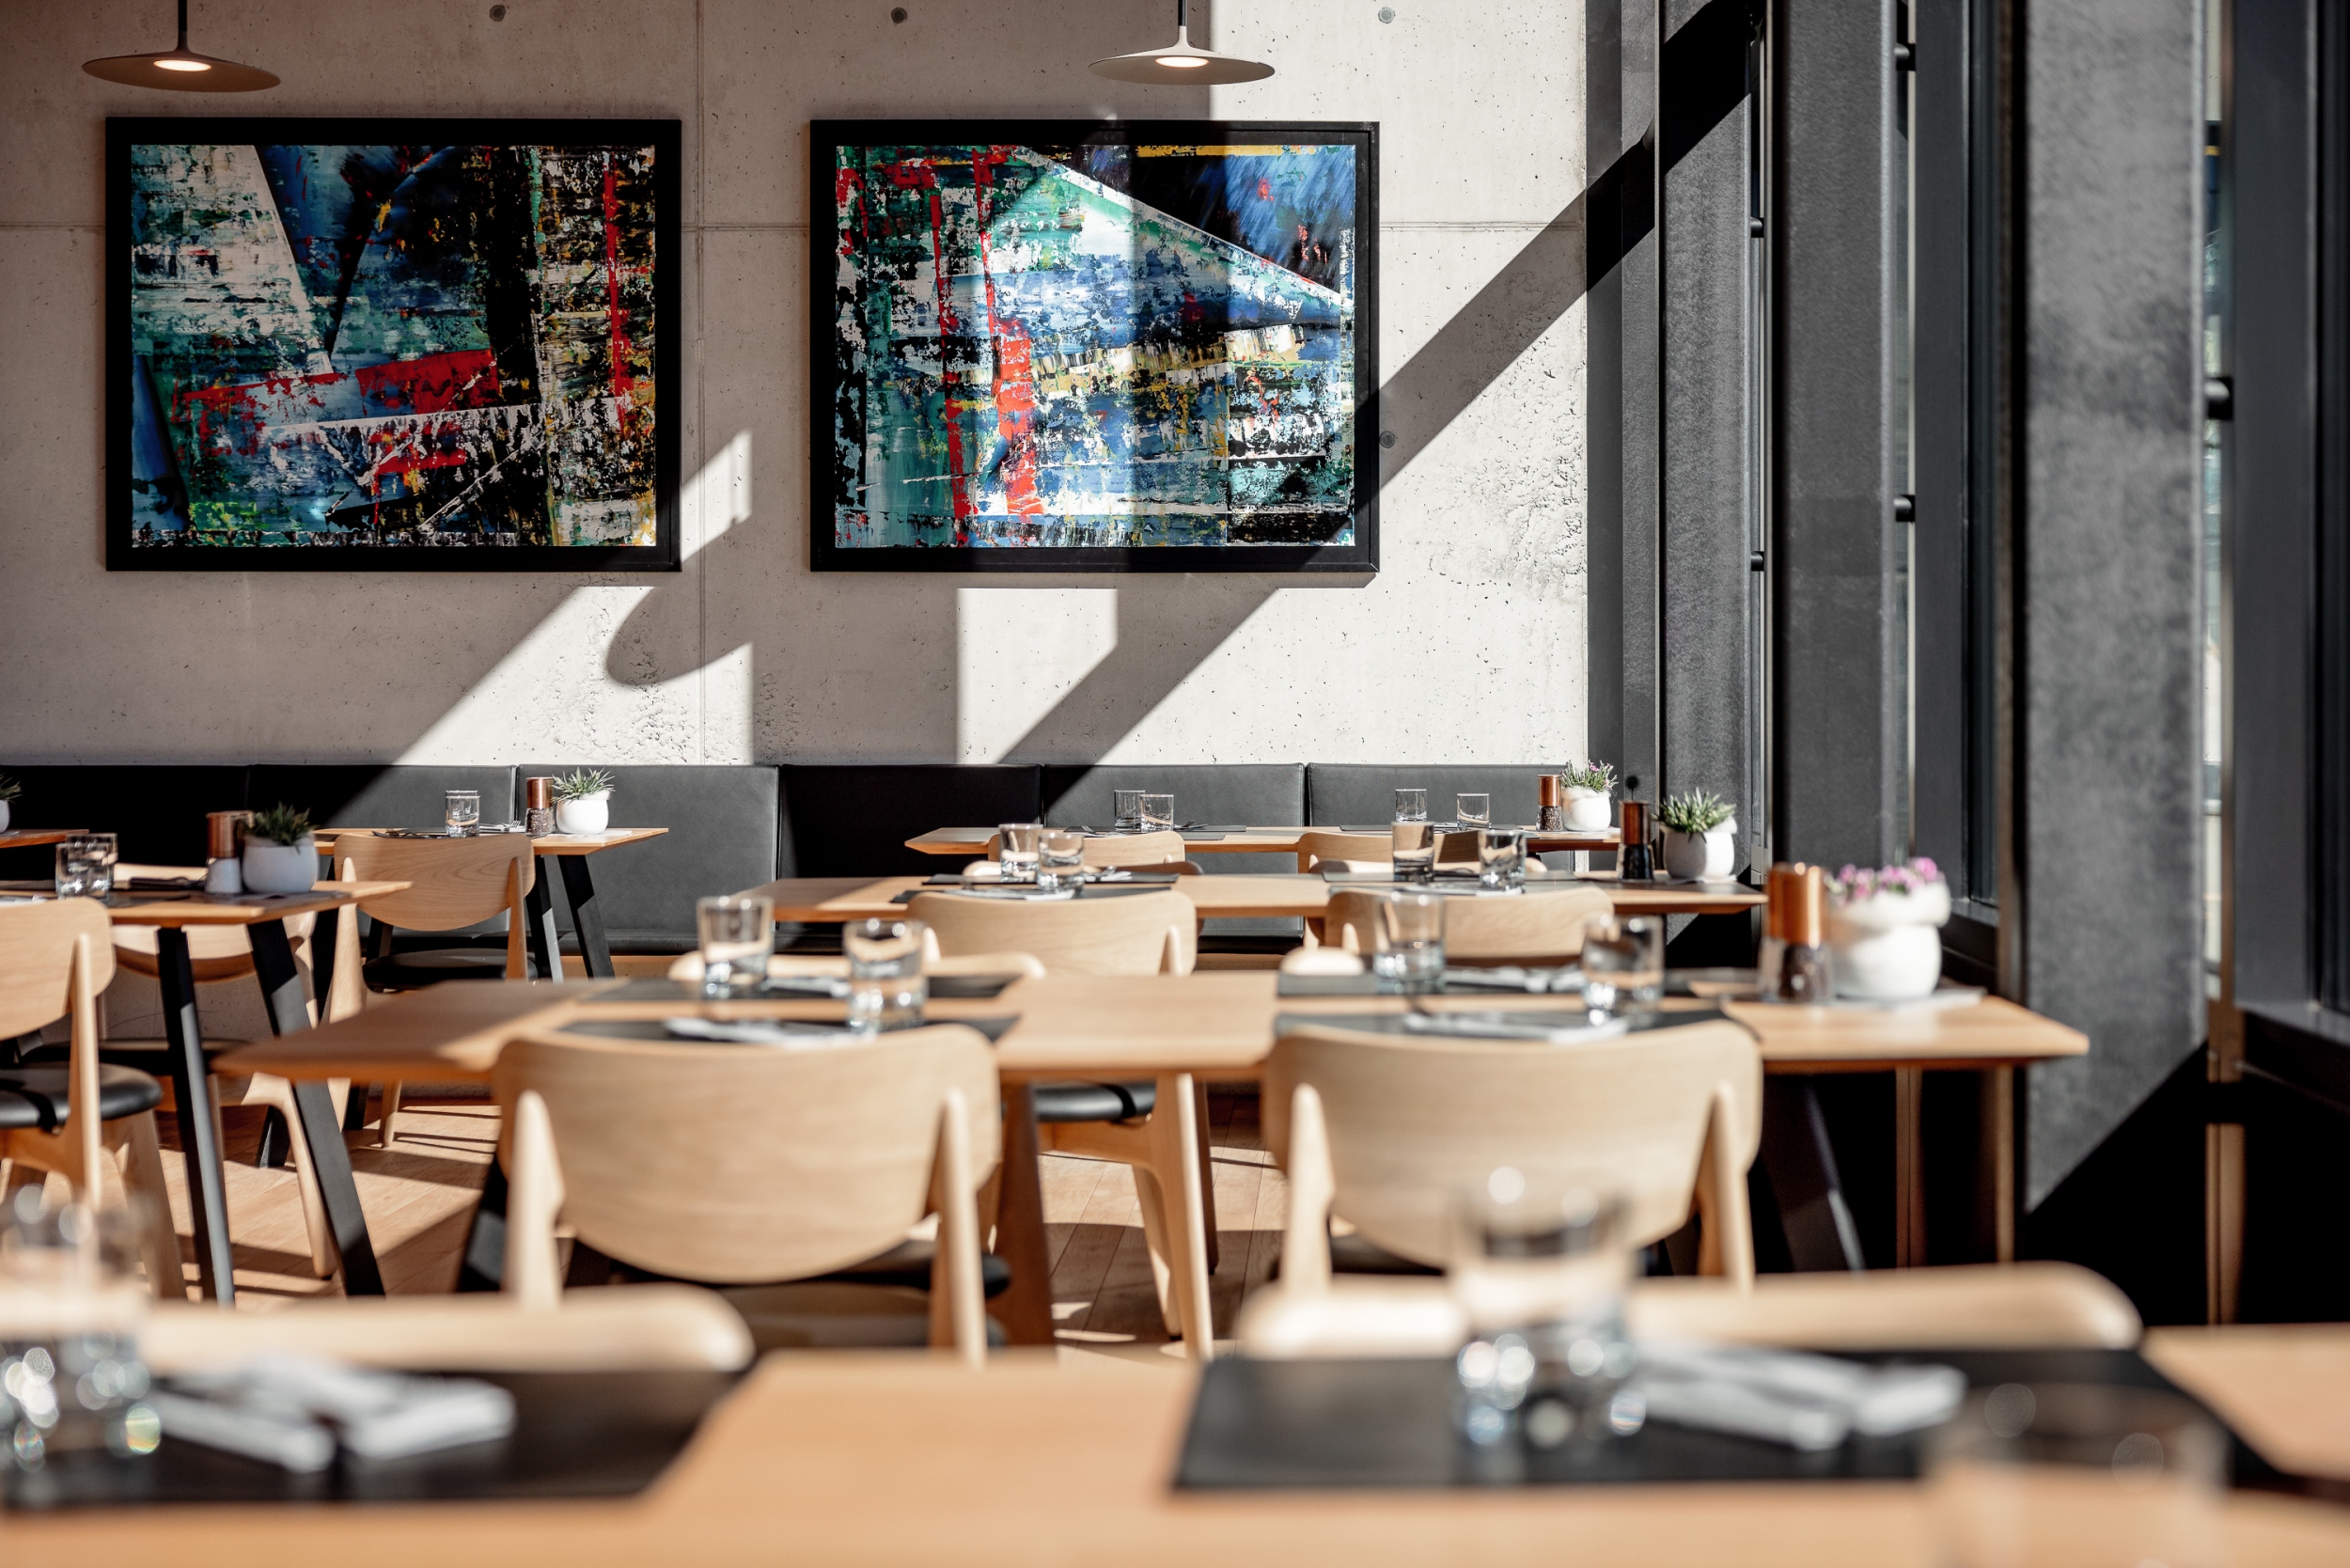 Falcon Restaurant Interior mit Kunstwerken von Alexander Lohmann